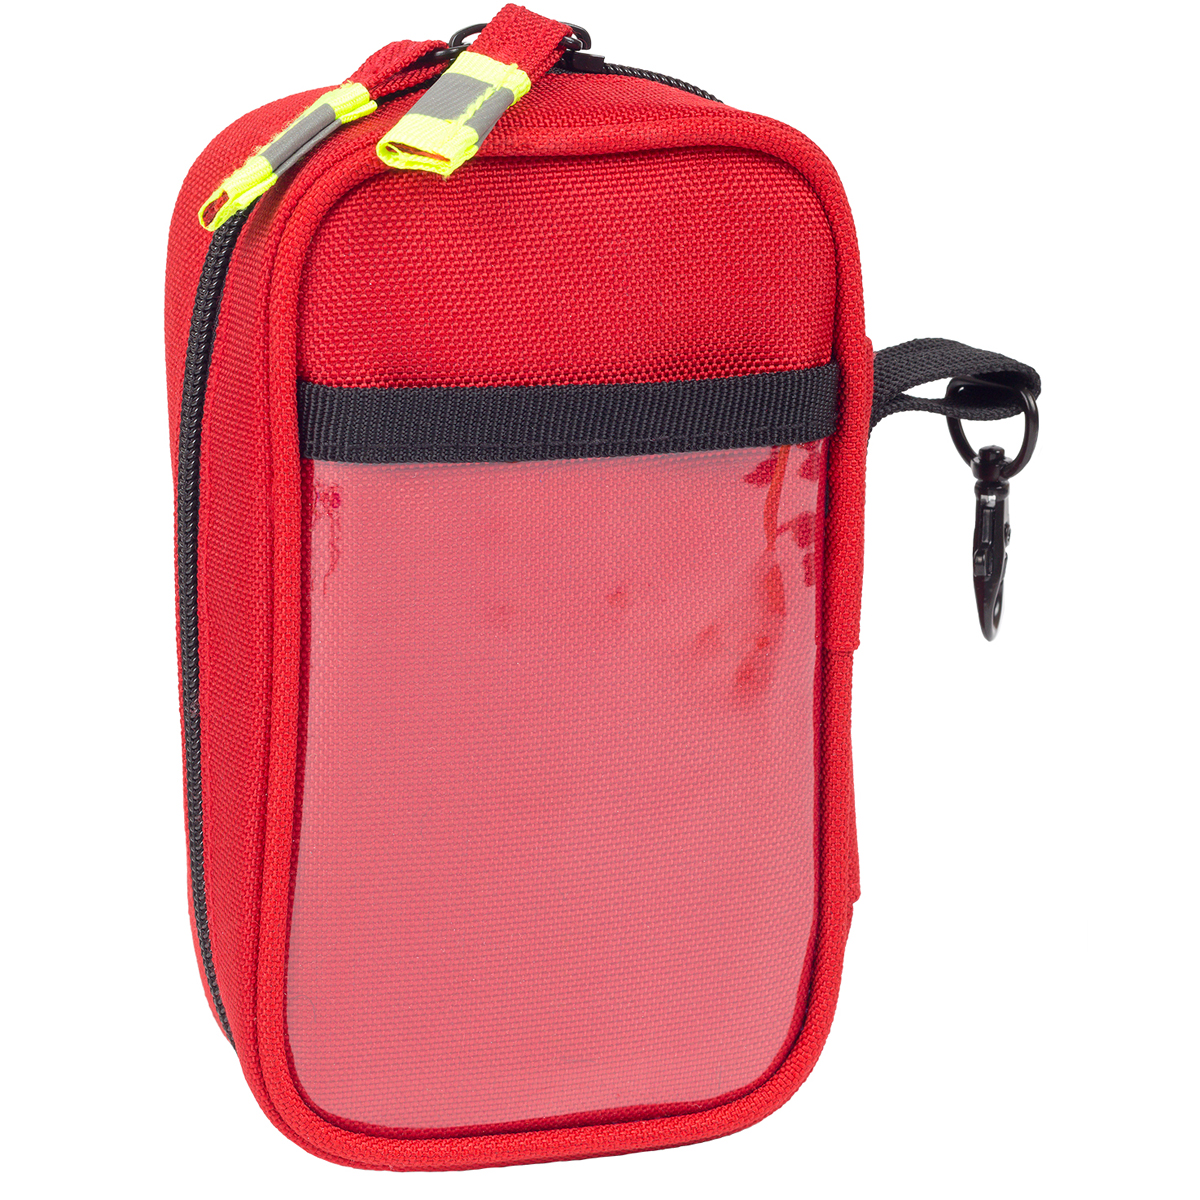 Elite Bags EMT POUCH - Großvolumige Oberschenkel-Tasche für umfangreiche Ausrüstung.